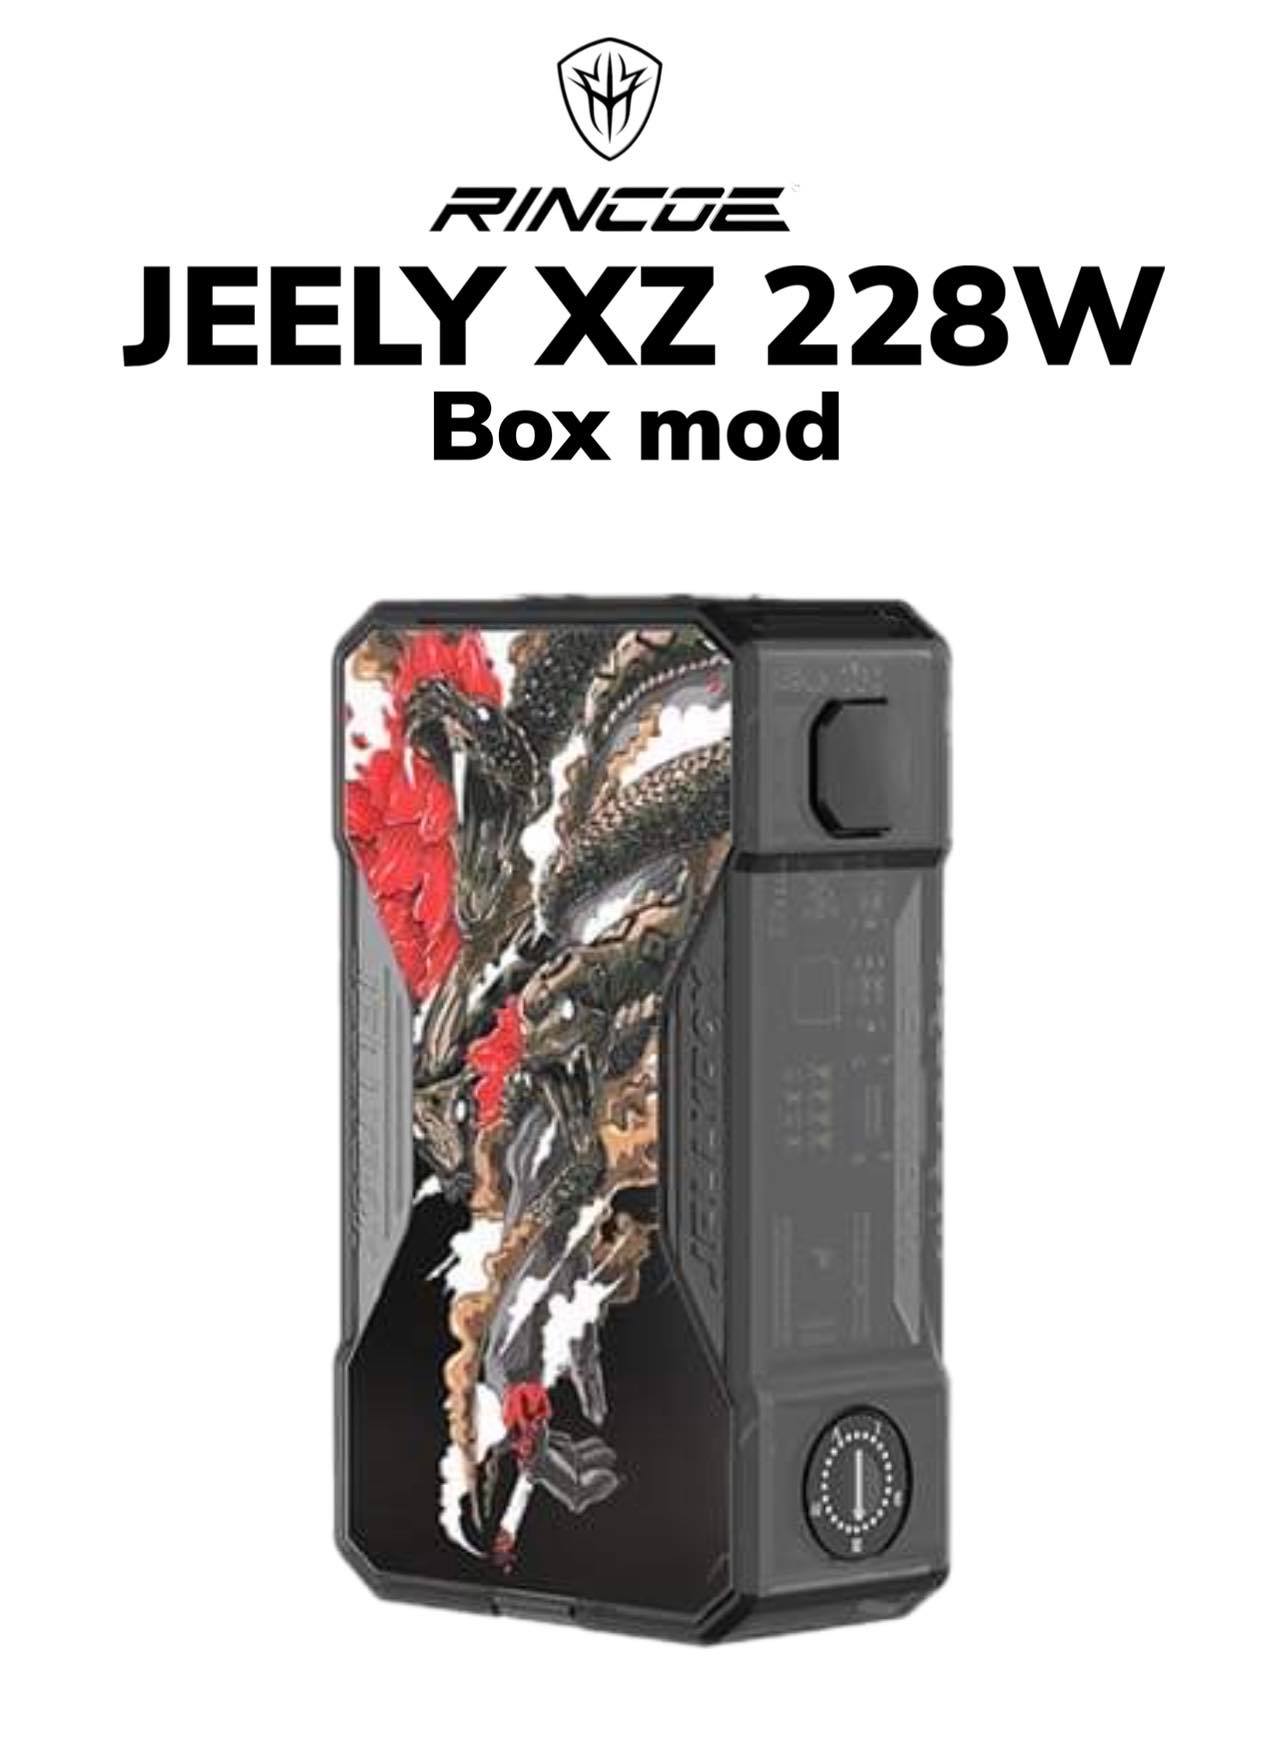 Jellybox XZ 228W